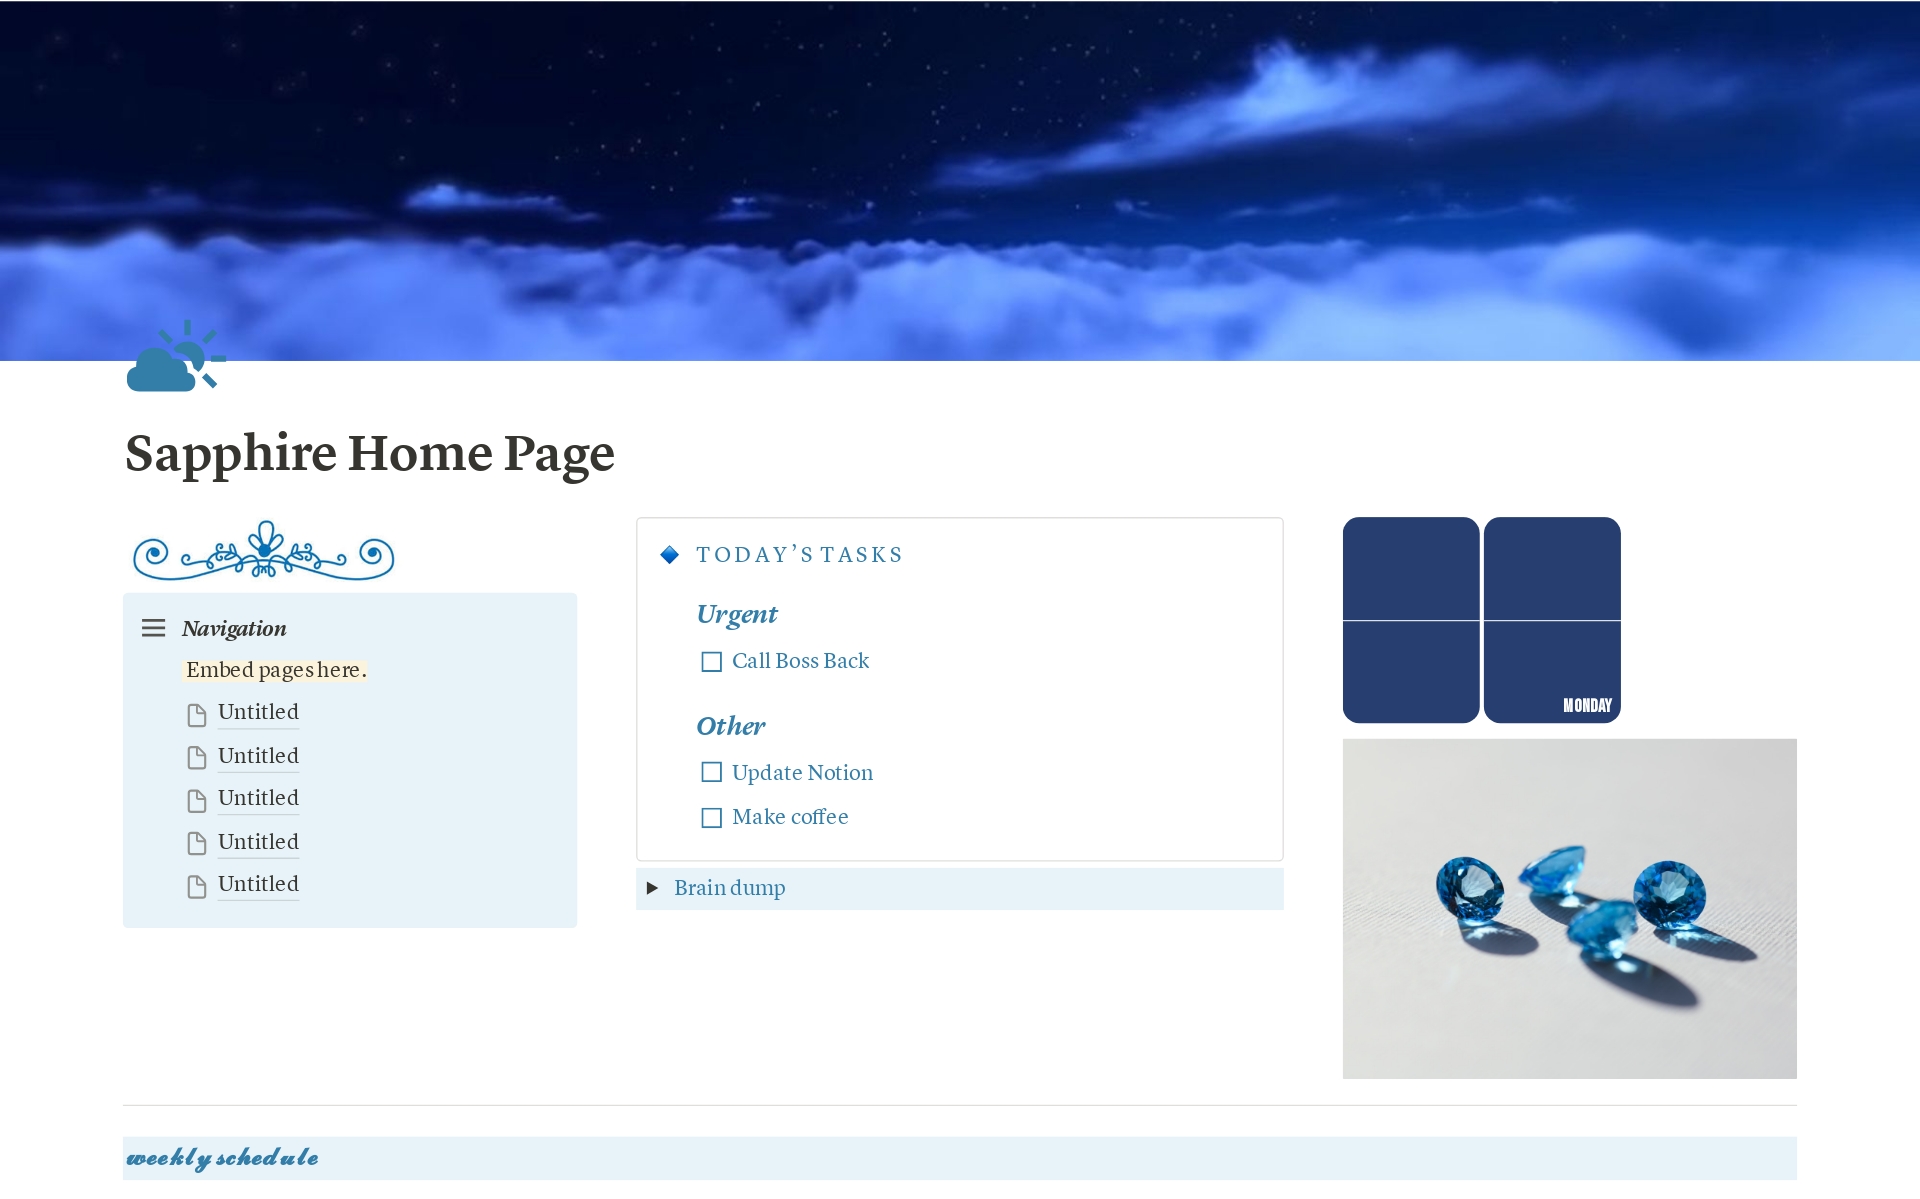 Vista previa de una plantilla para Sapphire Home Page